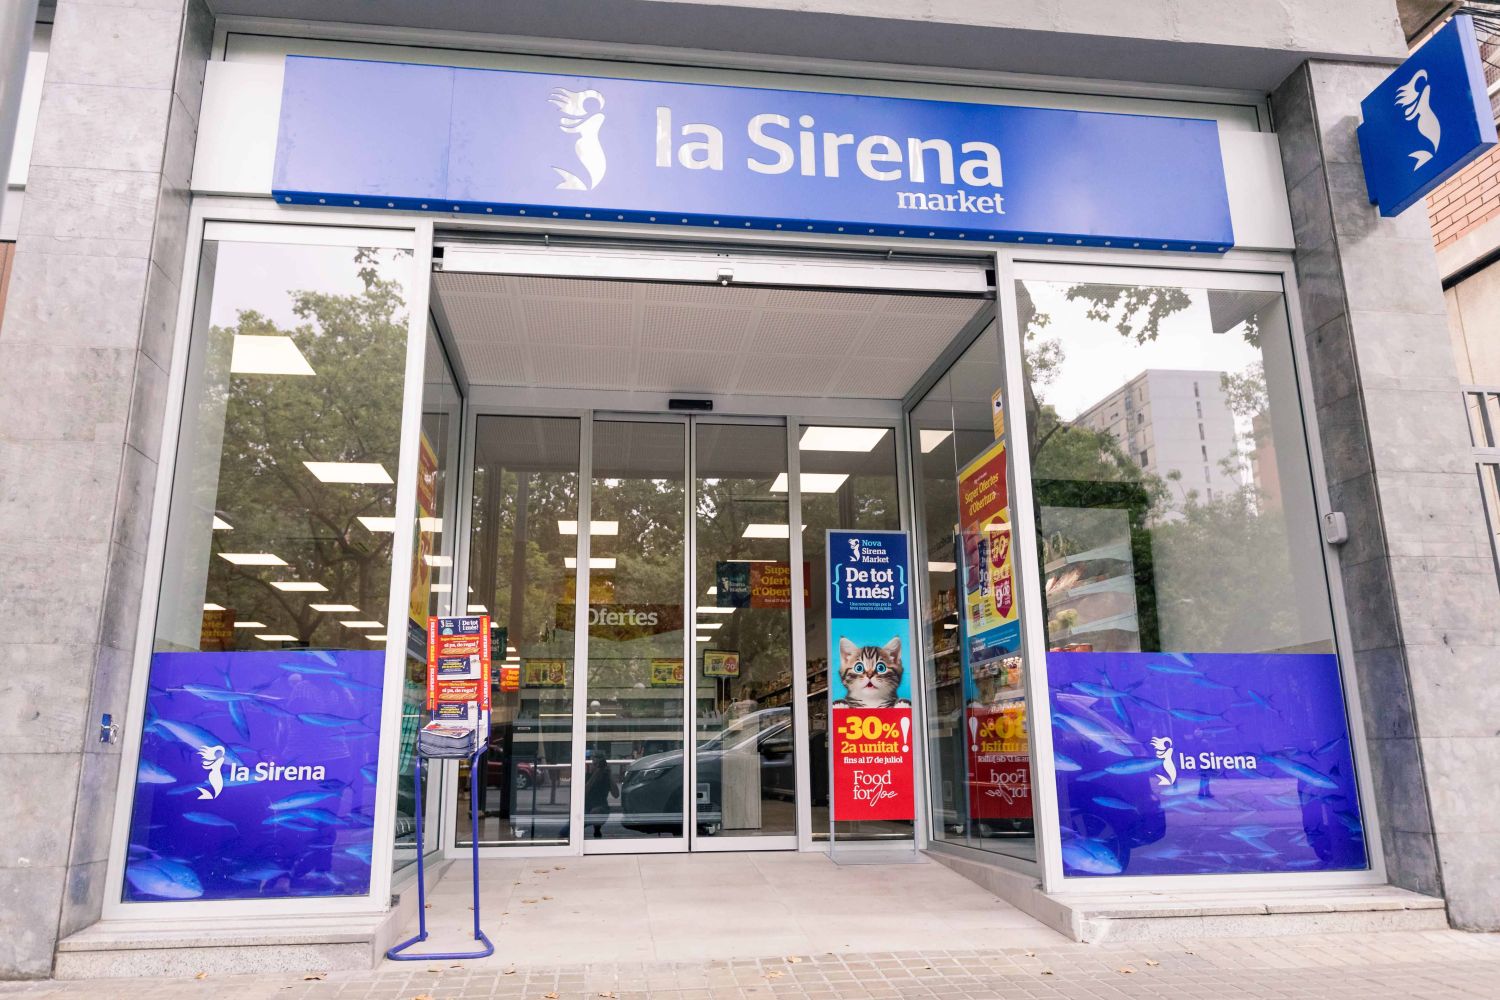 La inflación reduce la inyección de Elías en ‘La Sirena’ a 4 millones de euros